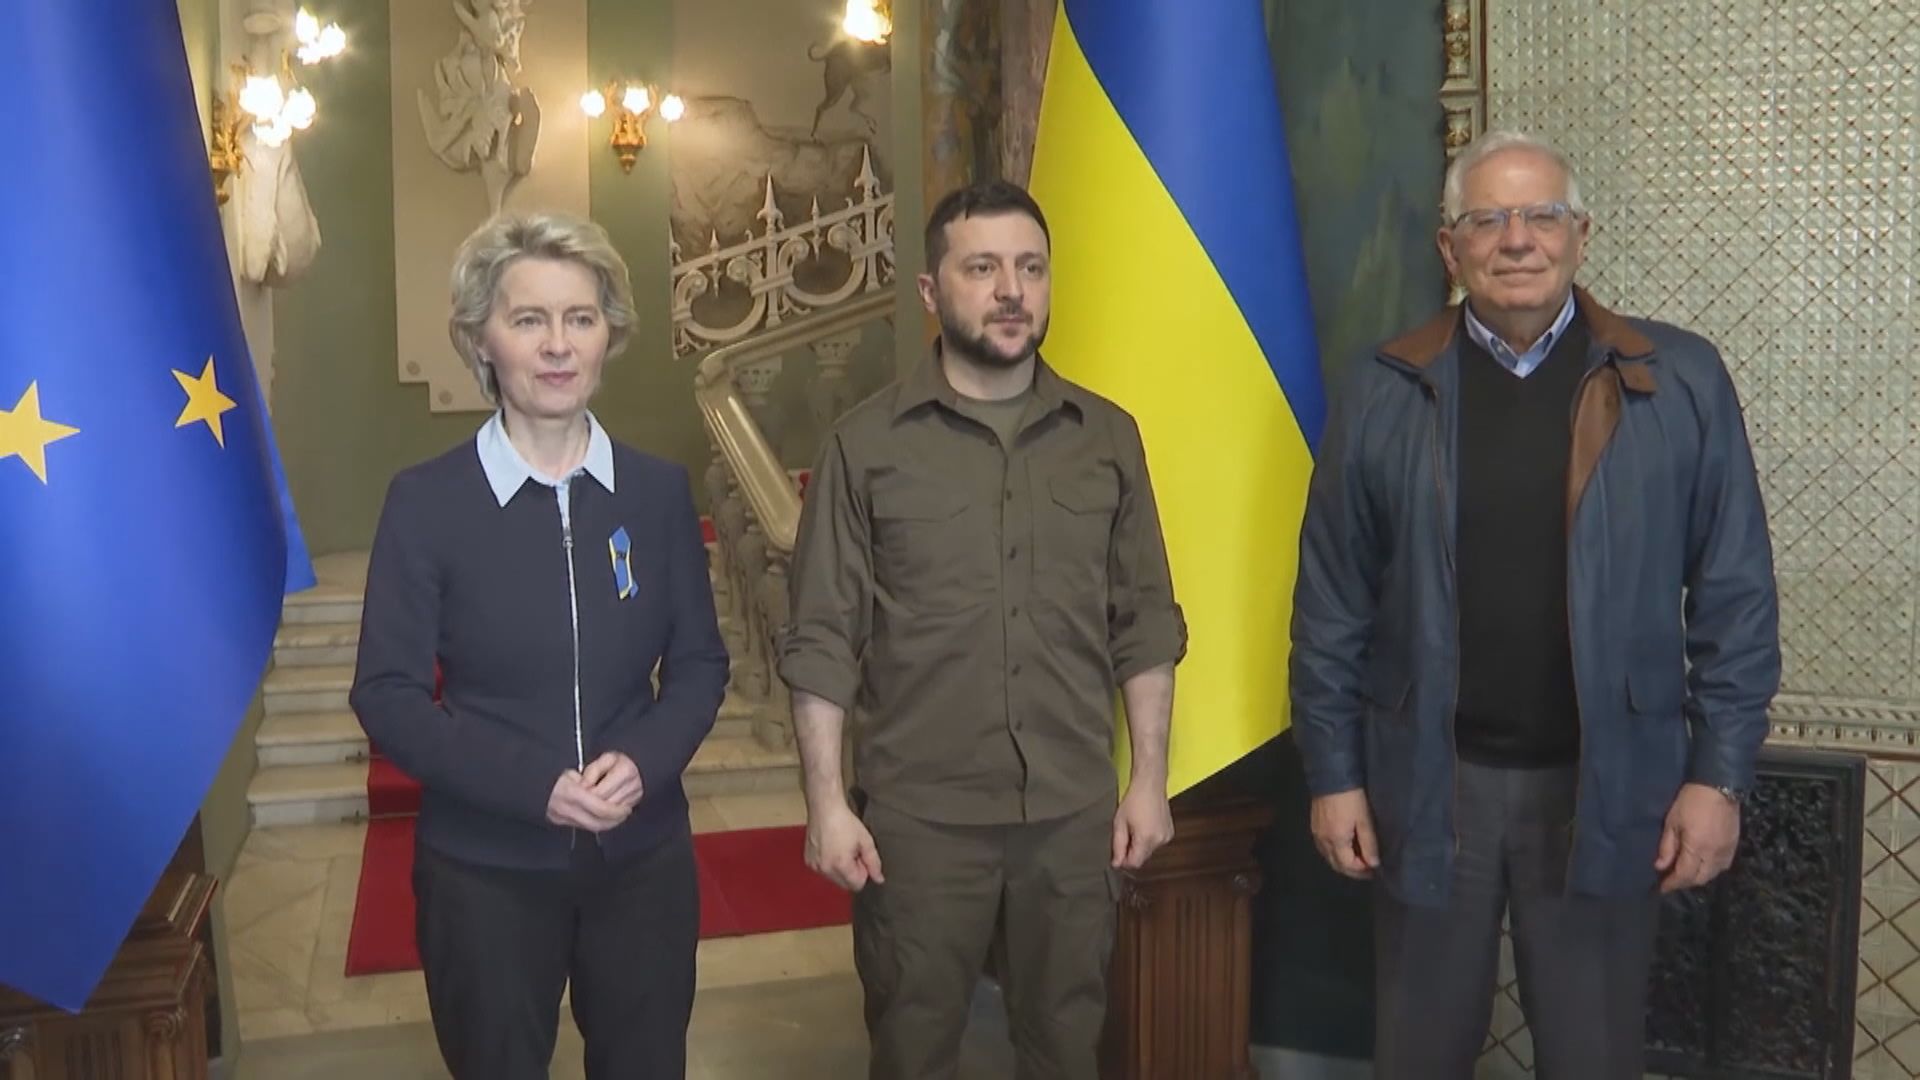 烏克蘭展開加入歐盟程序